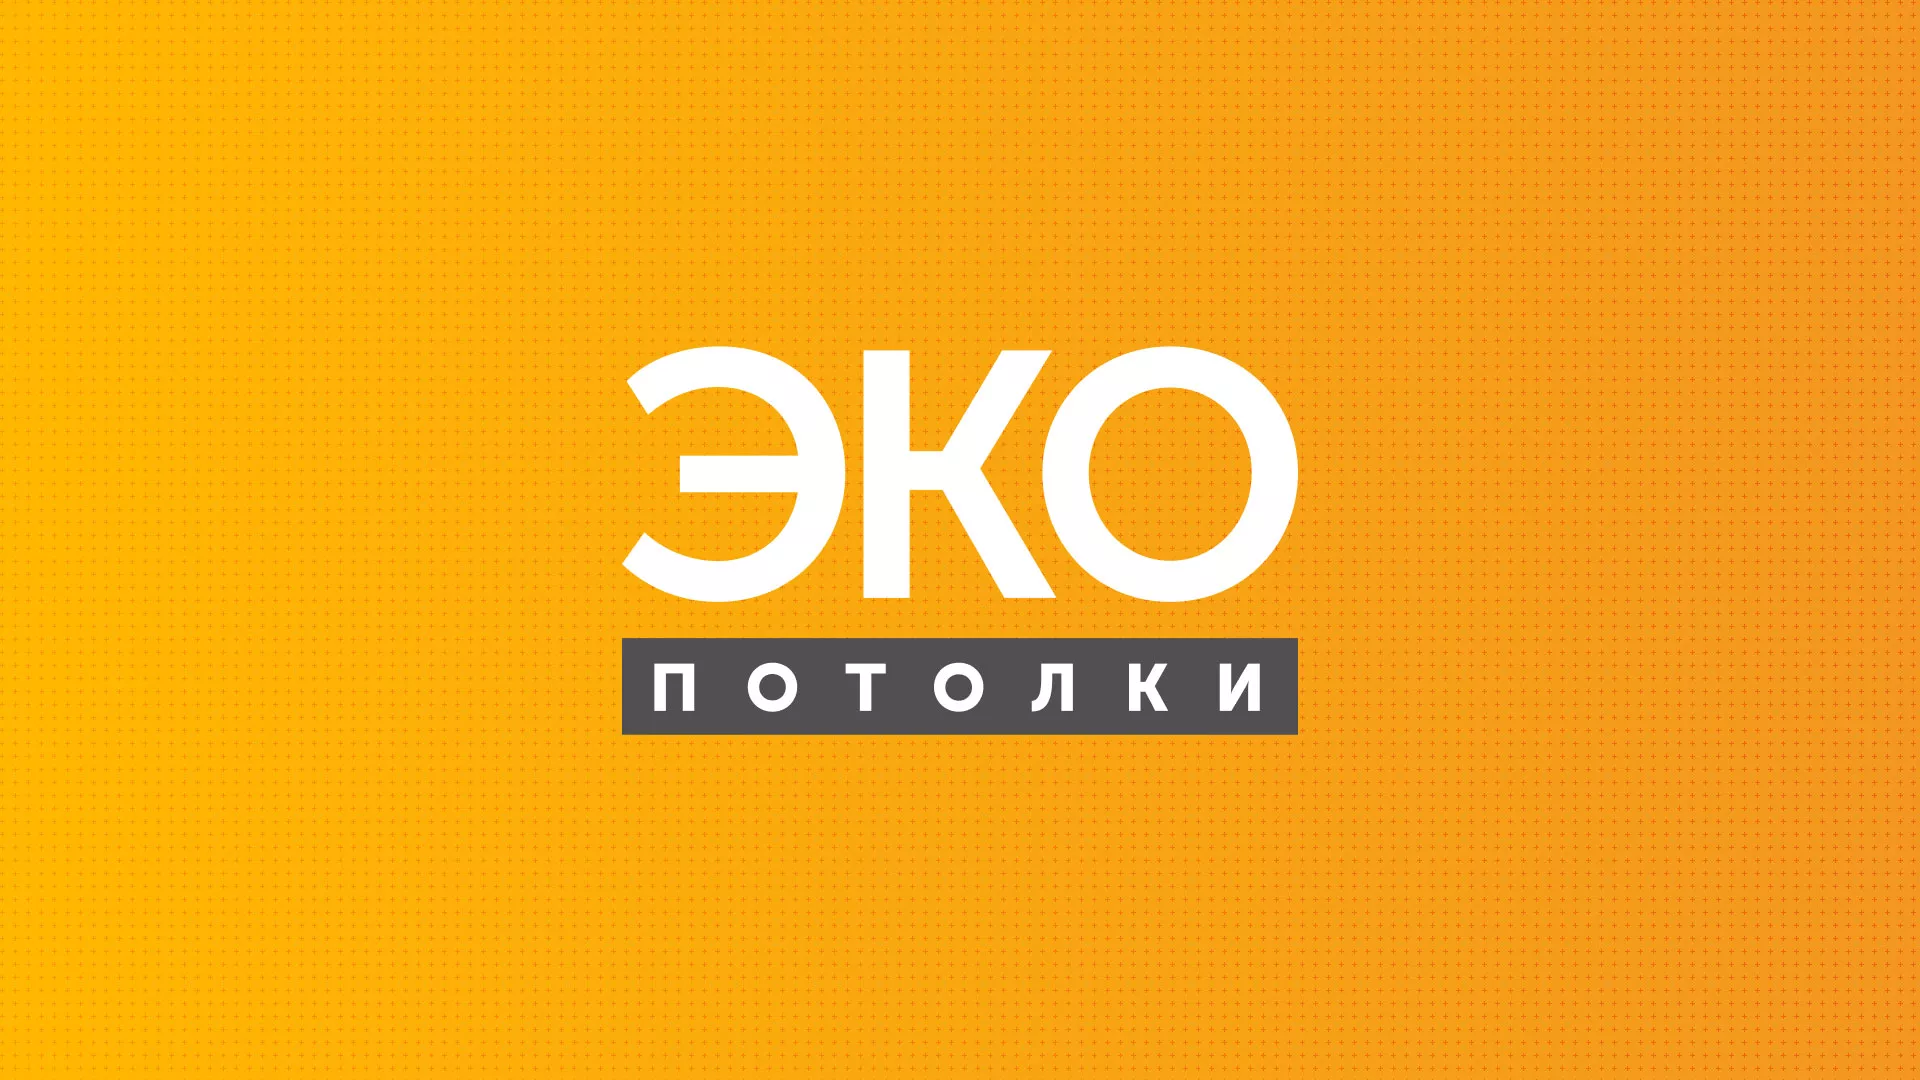 Разработка сайта по натяжным потолкам «Эко Потолки» в Усть-Илимске